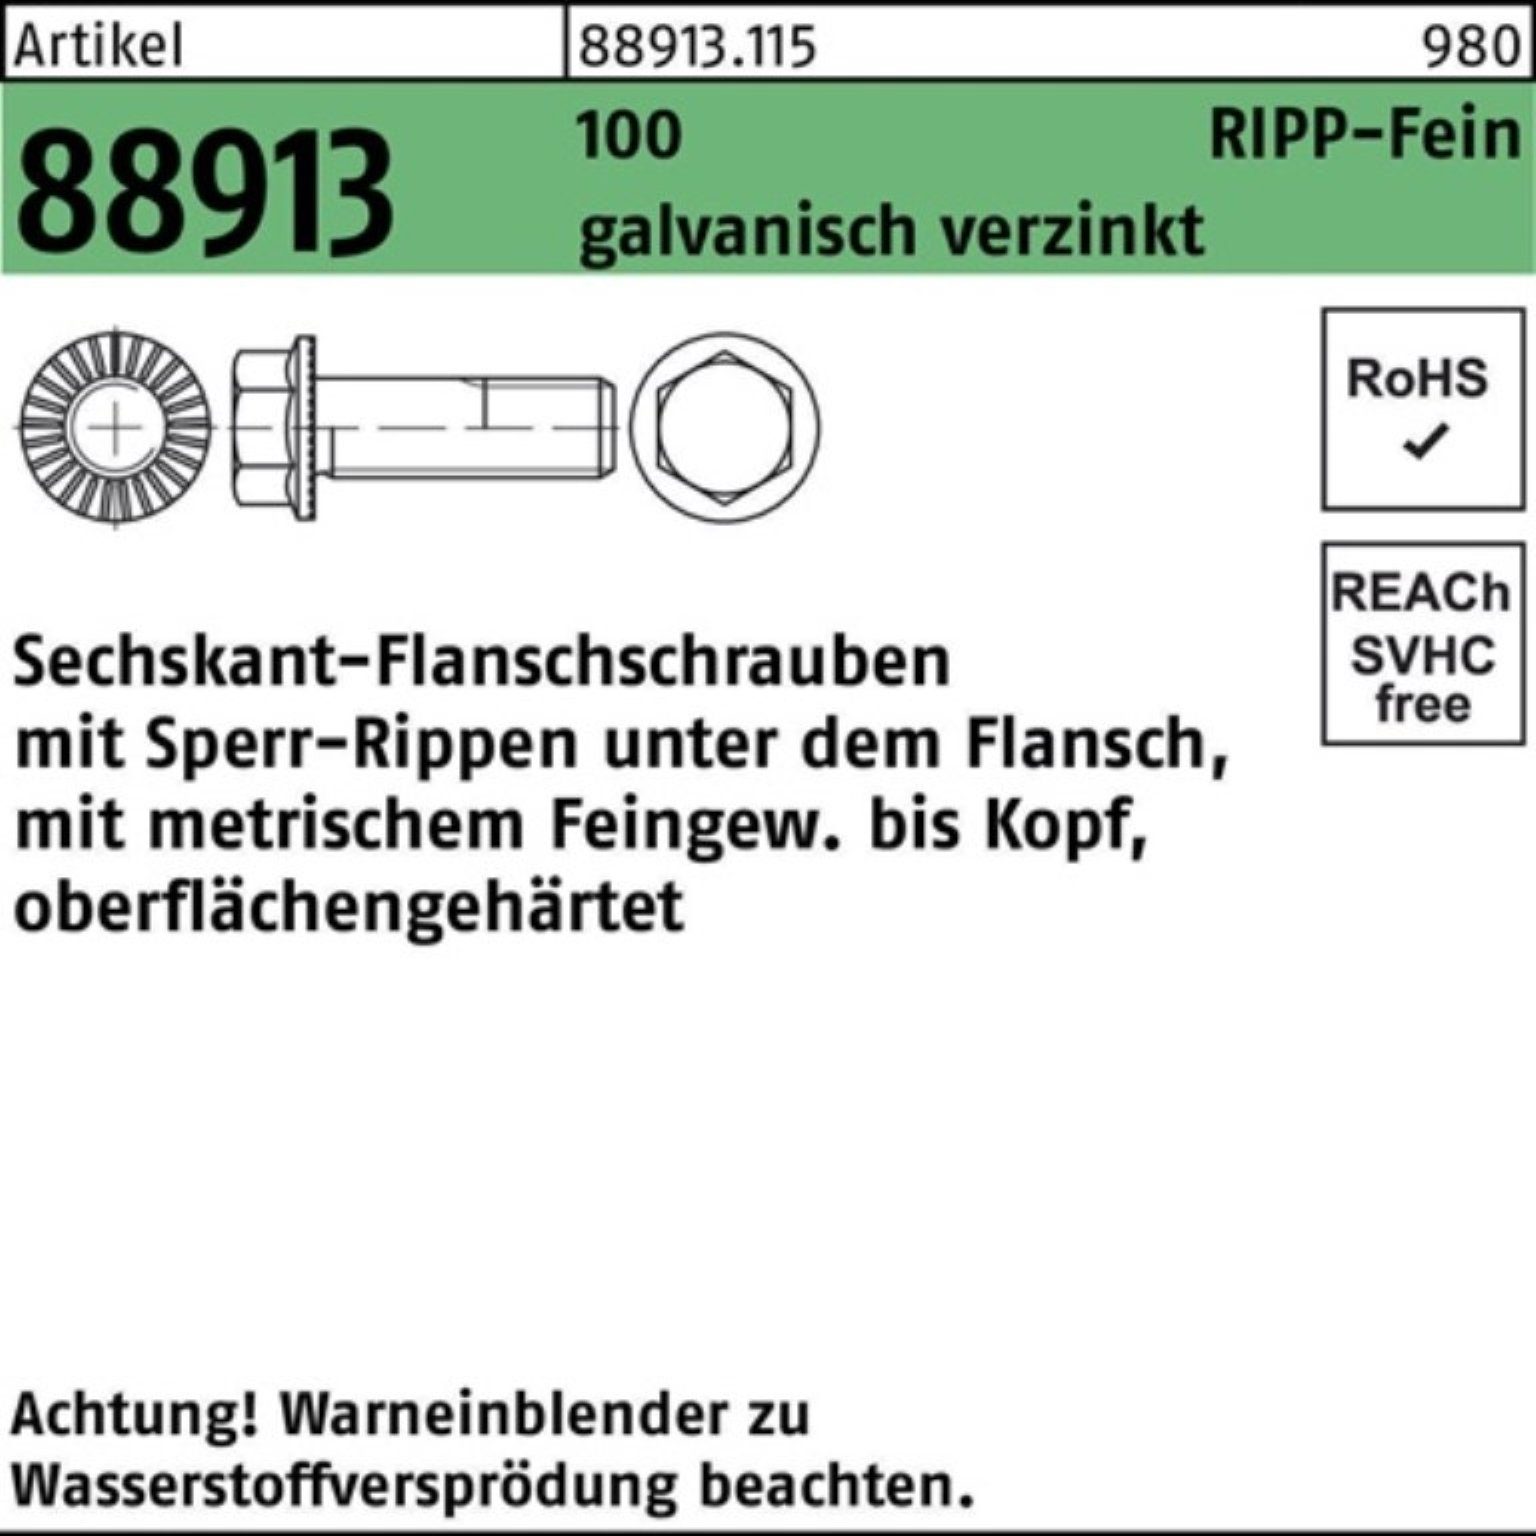 Reyher Schraube 88913 VG 1 M14x1,5x50 R 100er Sperr-Ripp Sechskantflanschschraube Pack